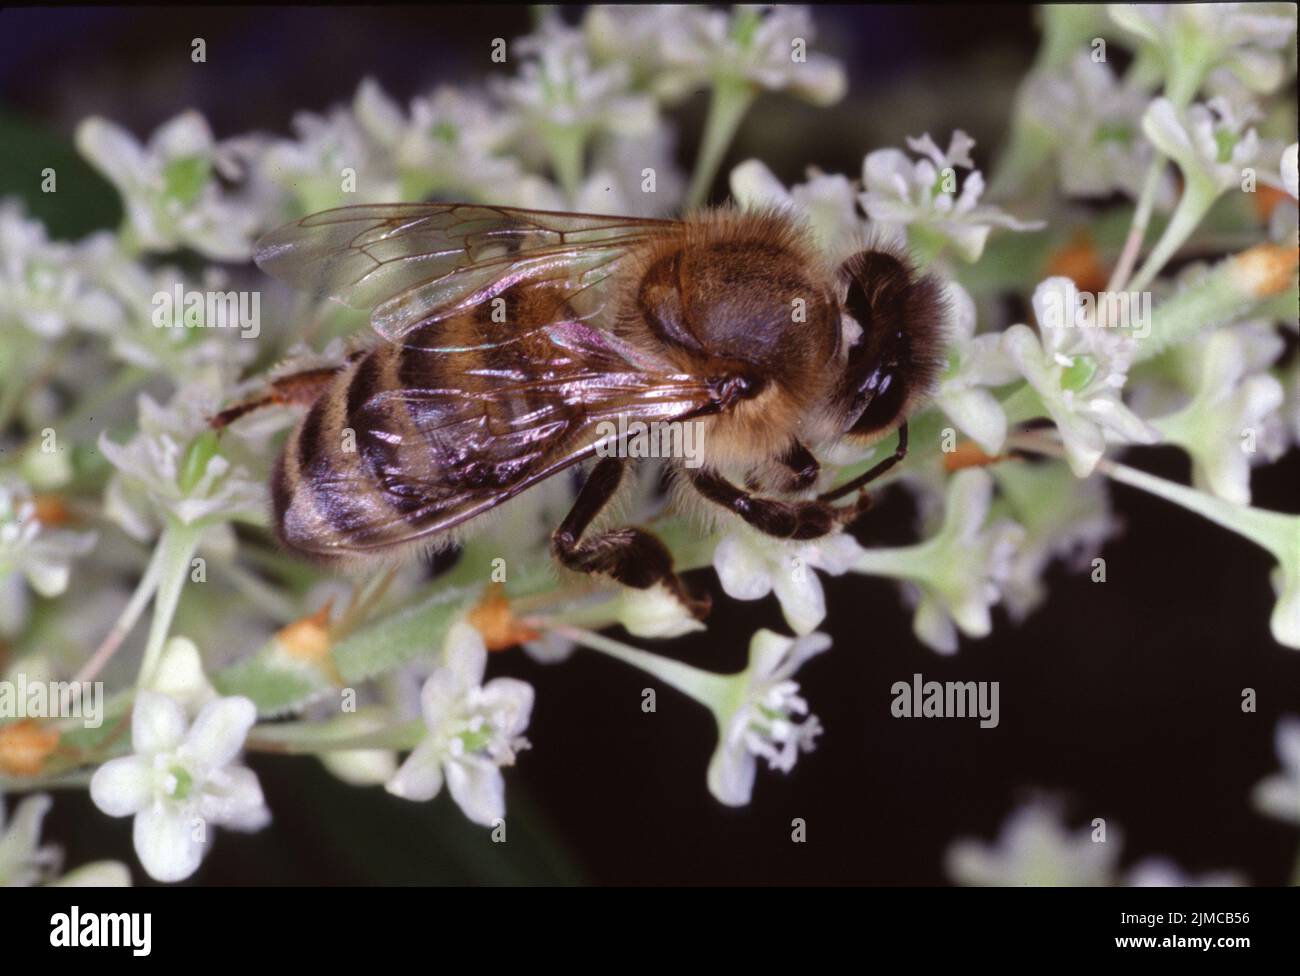 Bee, Apis, Blossom, Nectar, Honey, Thuringia, Germany, Europe Stock Photo